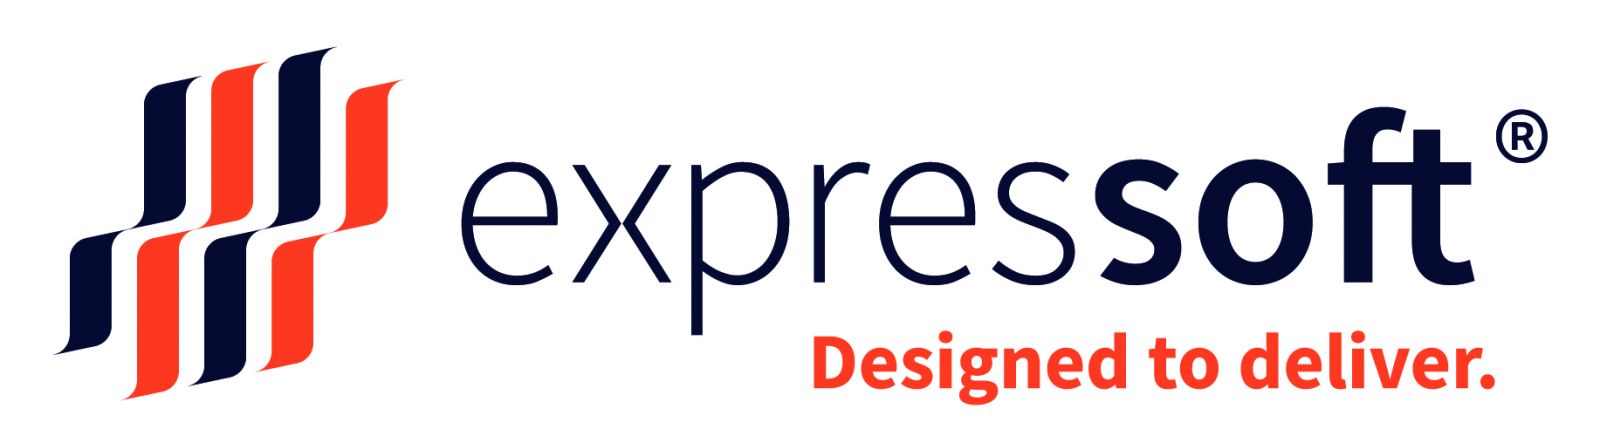 logo expressoft - Designed to deliver.